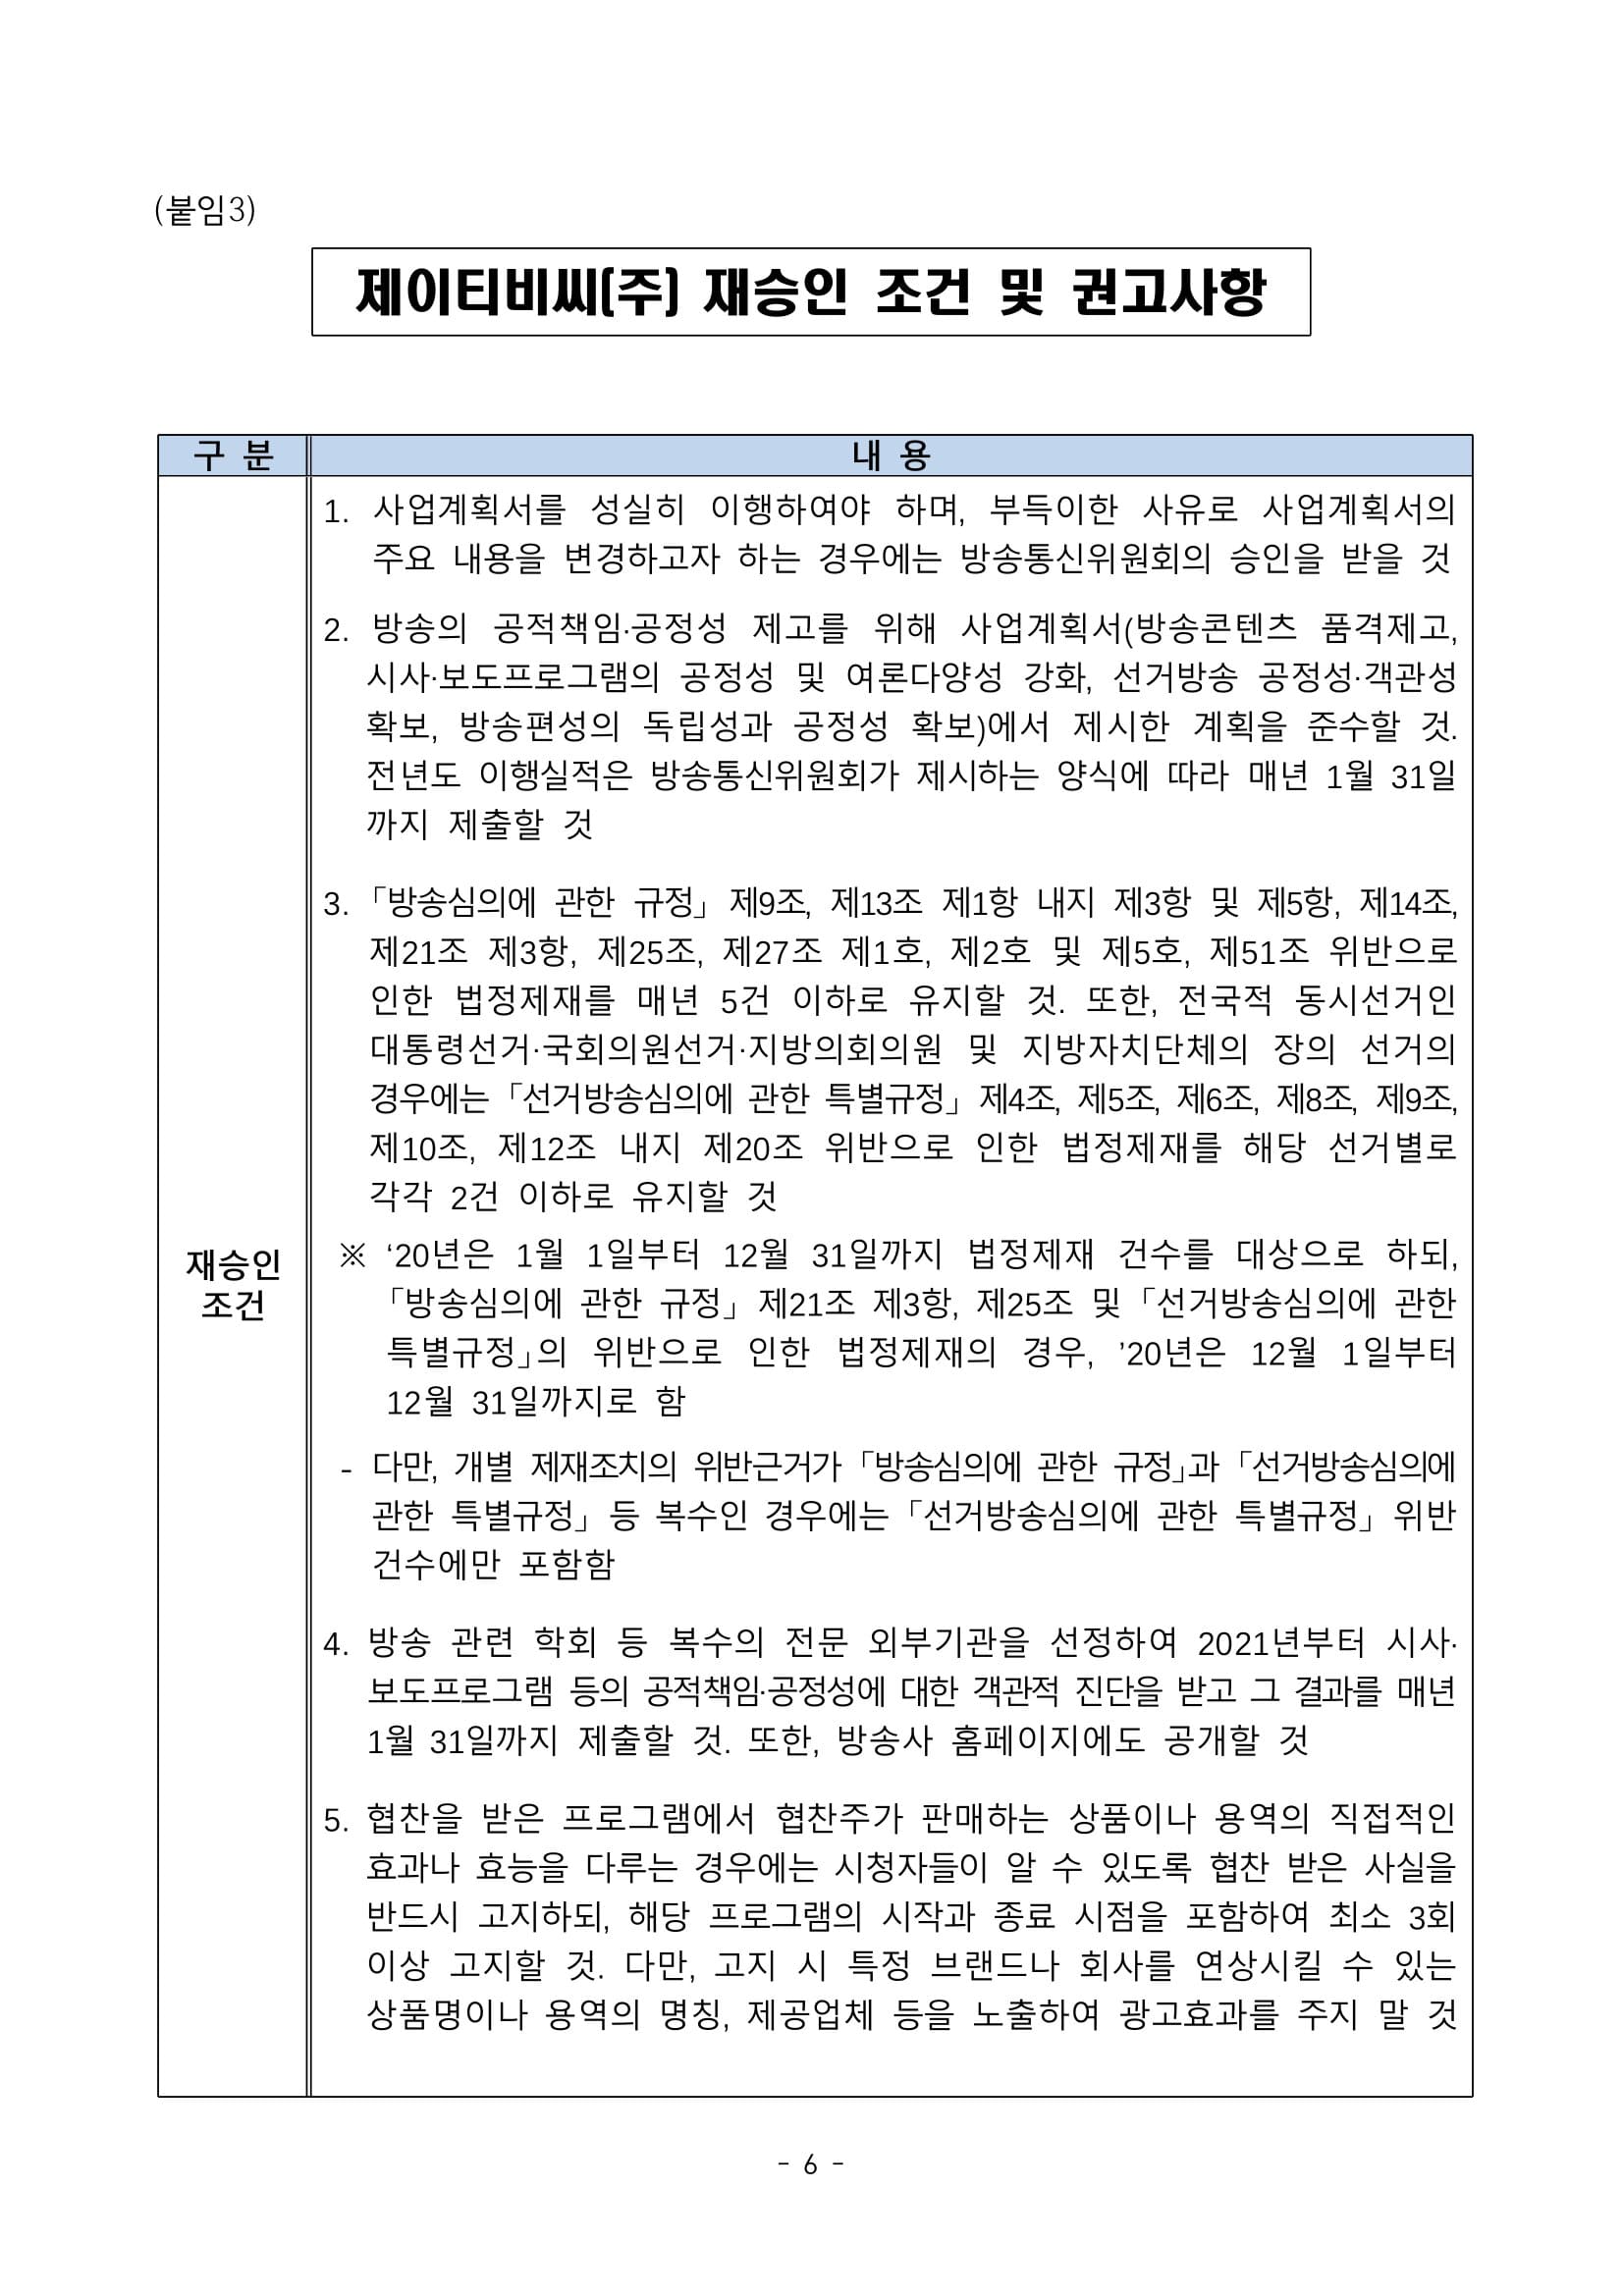 방송통신위원회(위원장 한상혁, 이하 ‘방통위’라 함)는 2020년 11월 27일(금) 14_0006.jpg